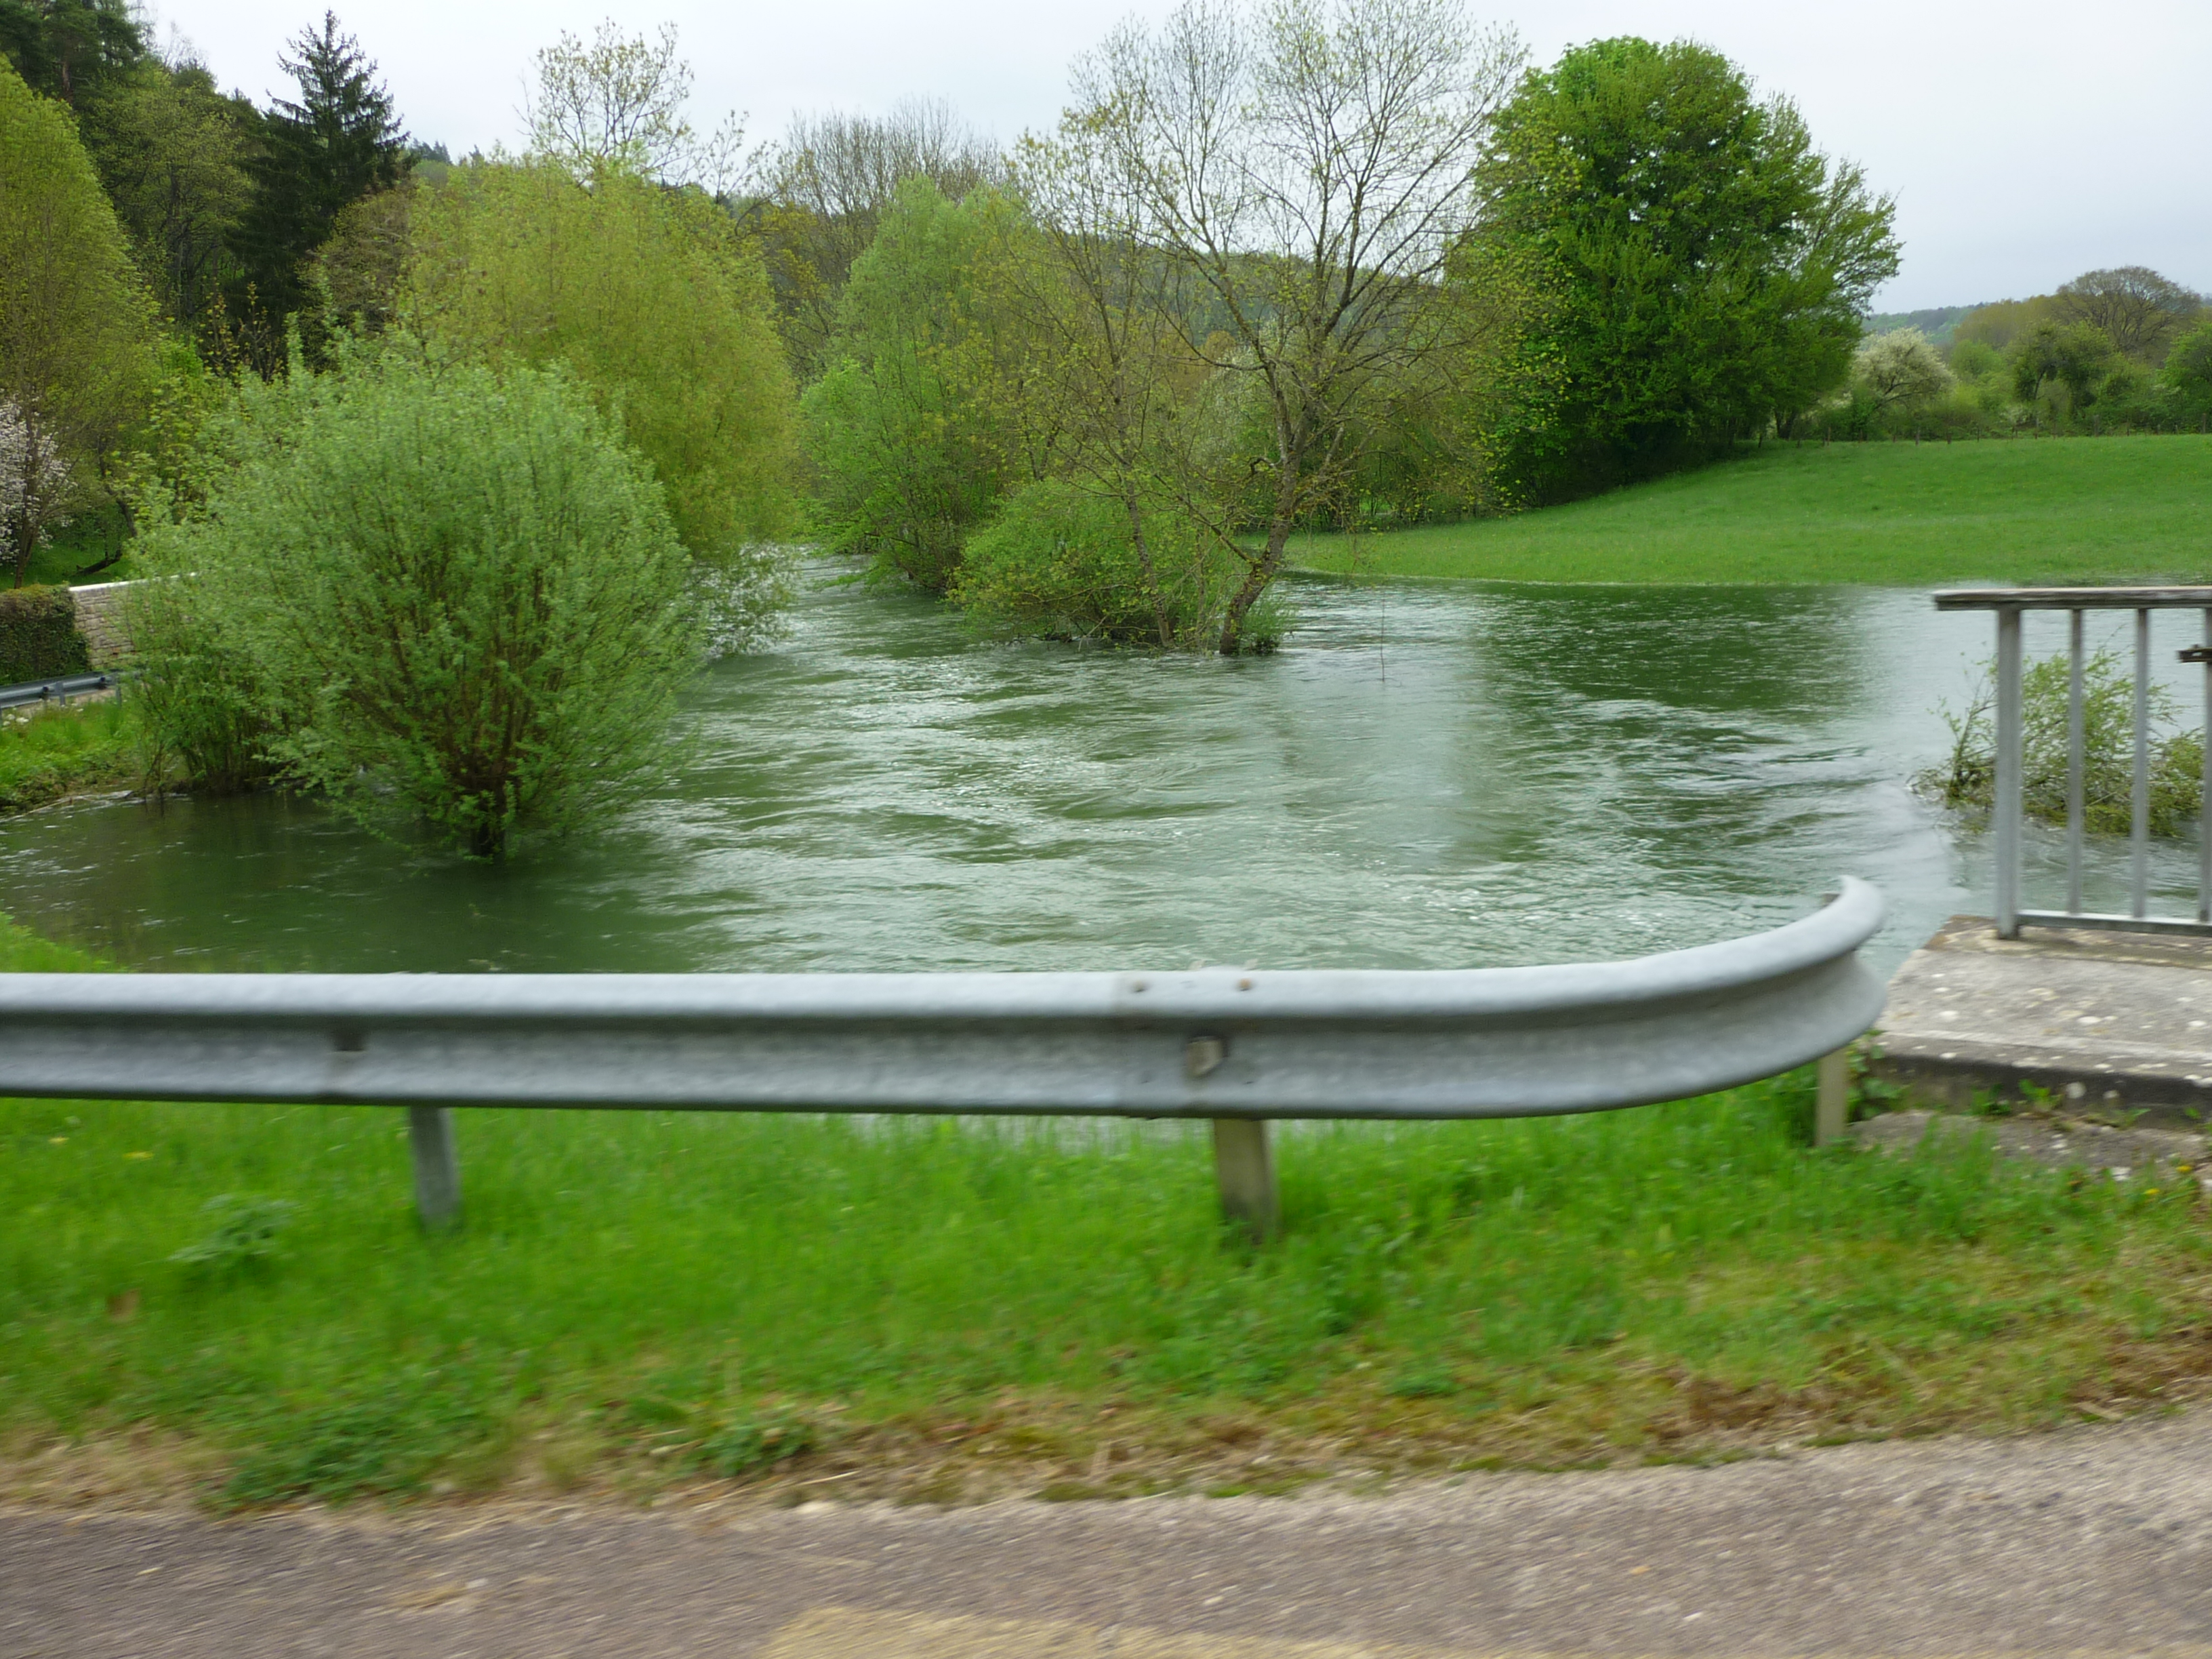 Crue de la Seine, en mars 2013, à Aisey sur Seine, pont route de Dijon, en Côte d'Or